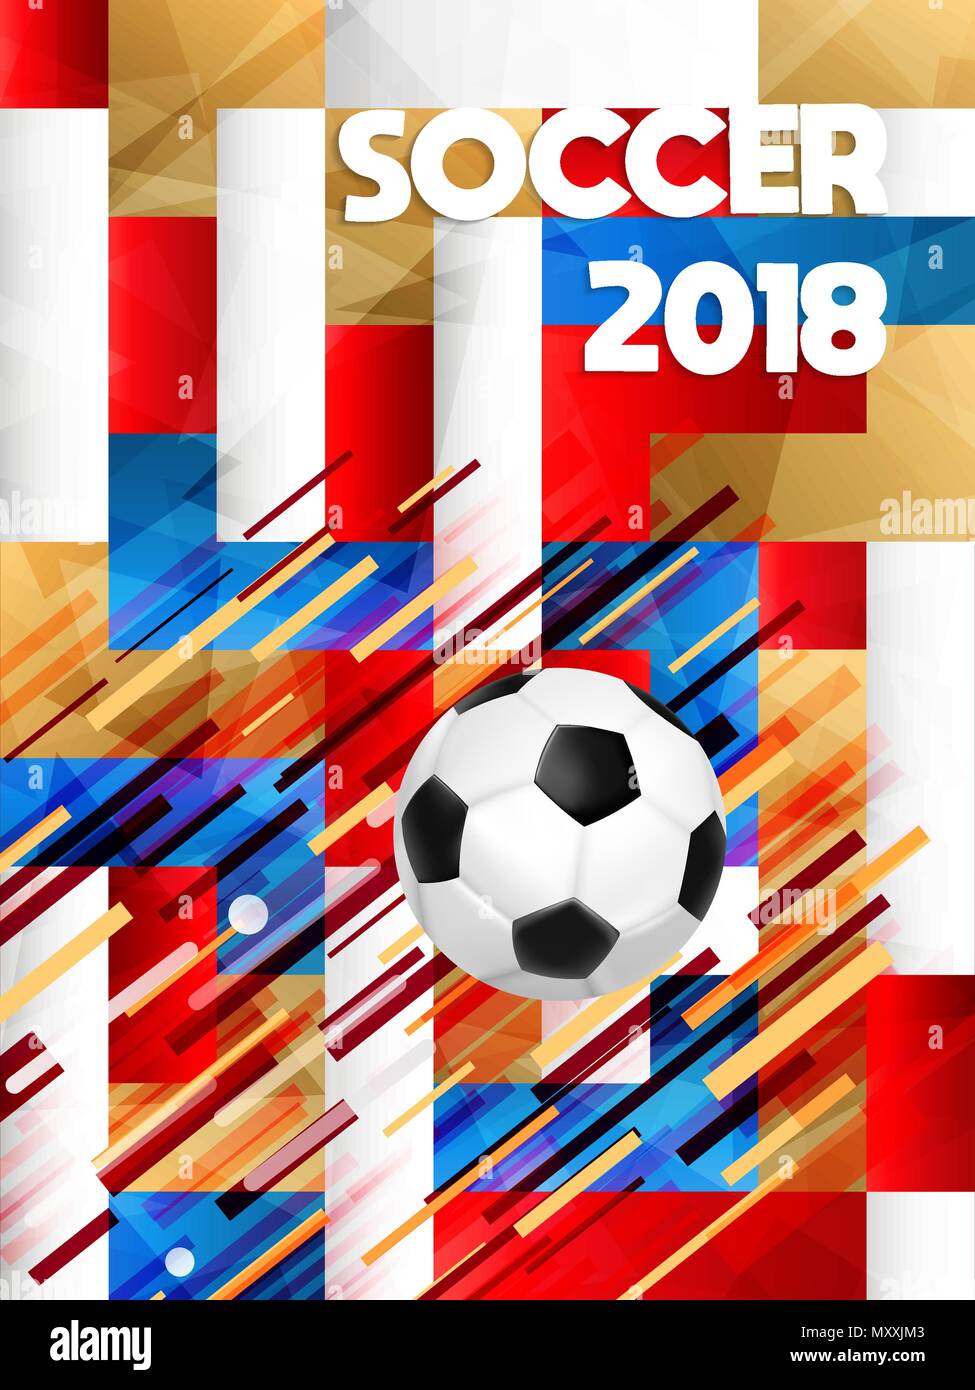 Soccer poster per la Russia world cup 2018 special match game. Sport event illustrazione con 3d realistica sfera di calcio. EPS10 vettore. Illustrazione Vettoriale